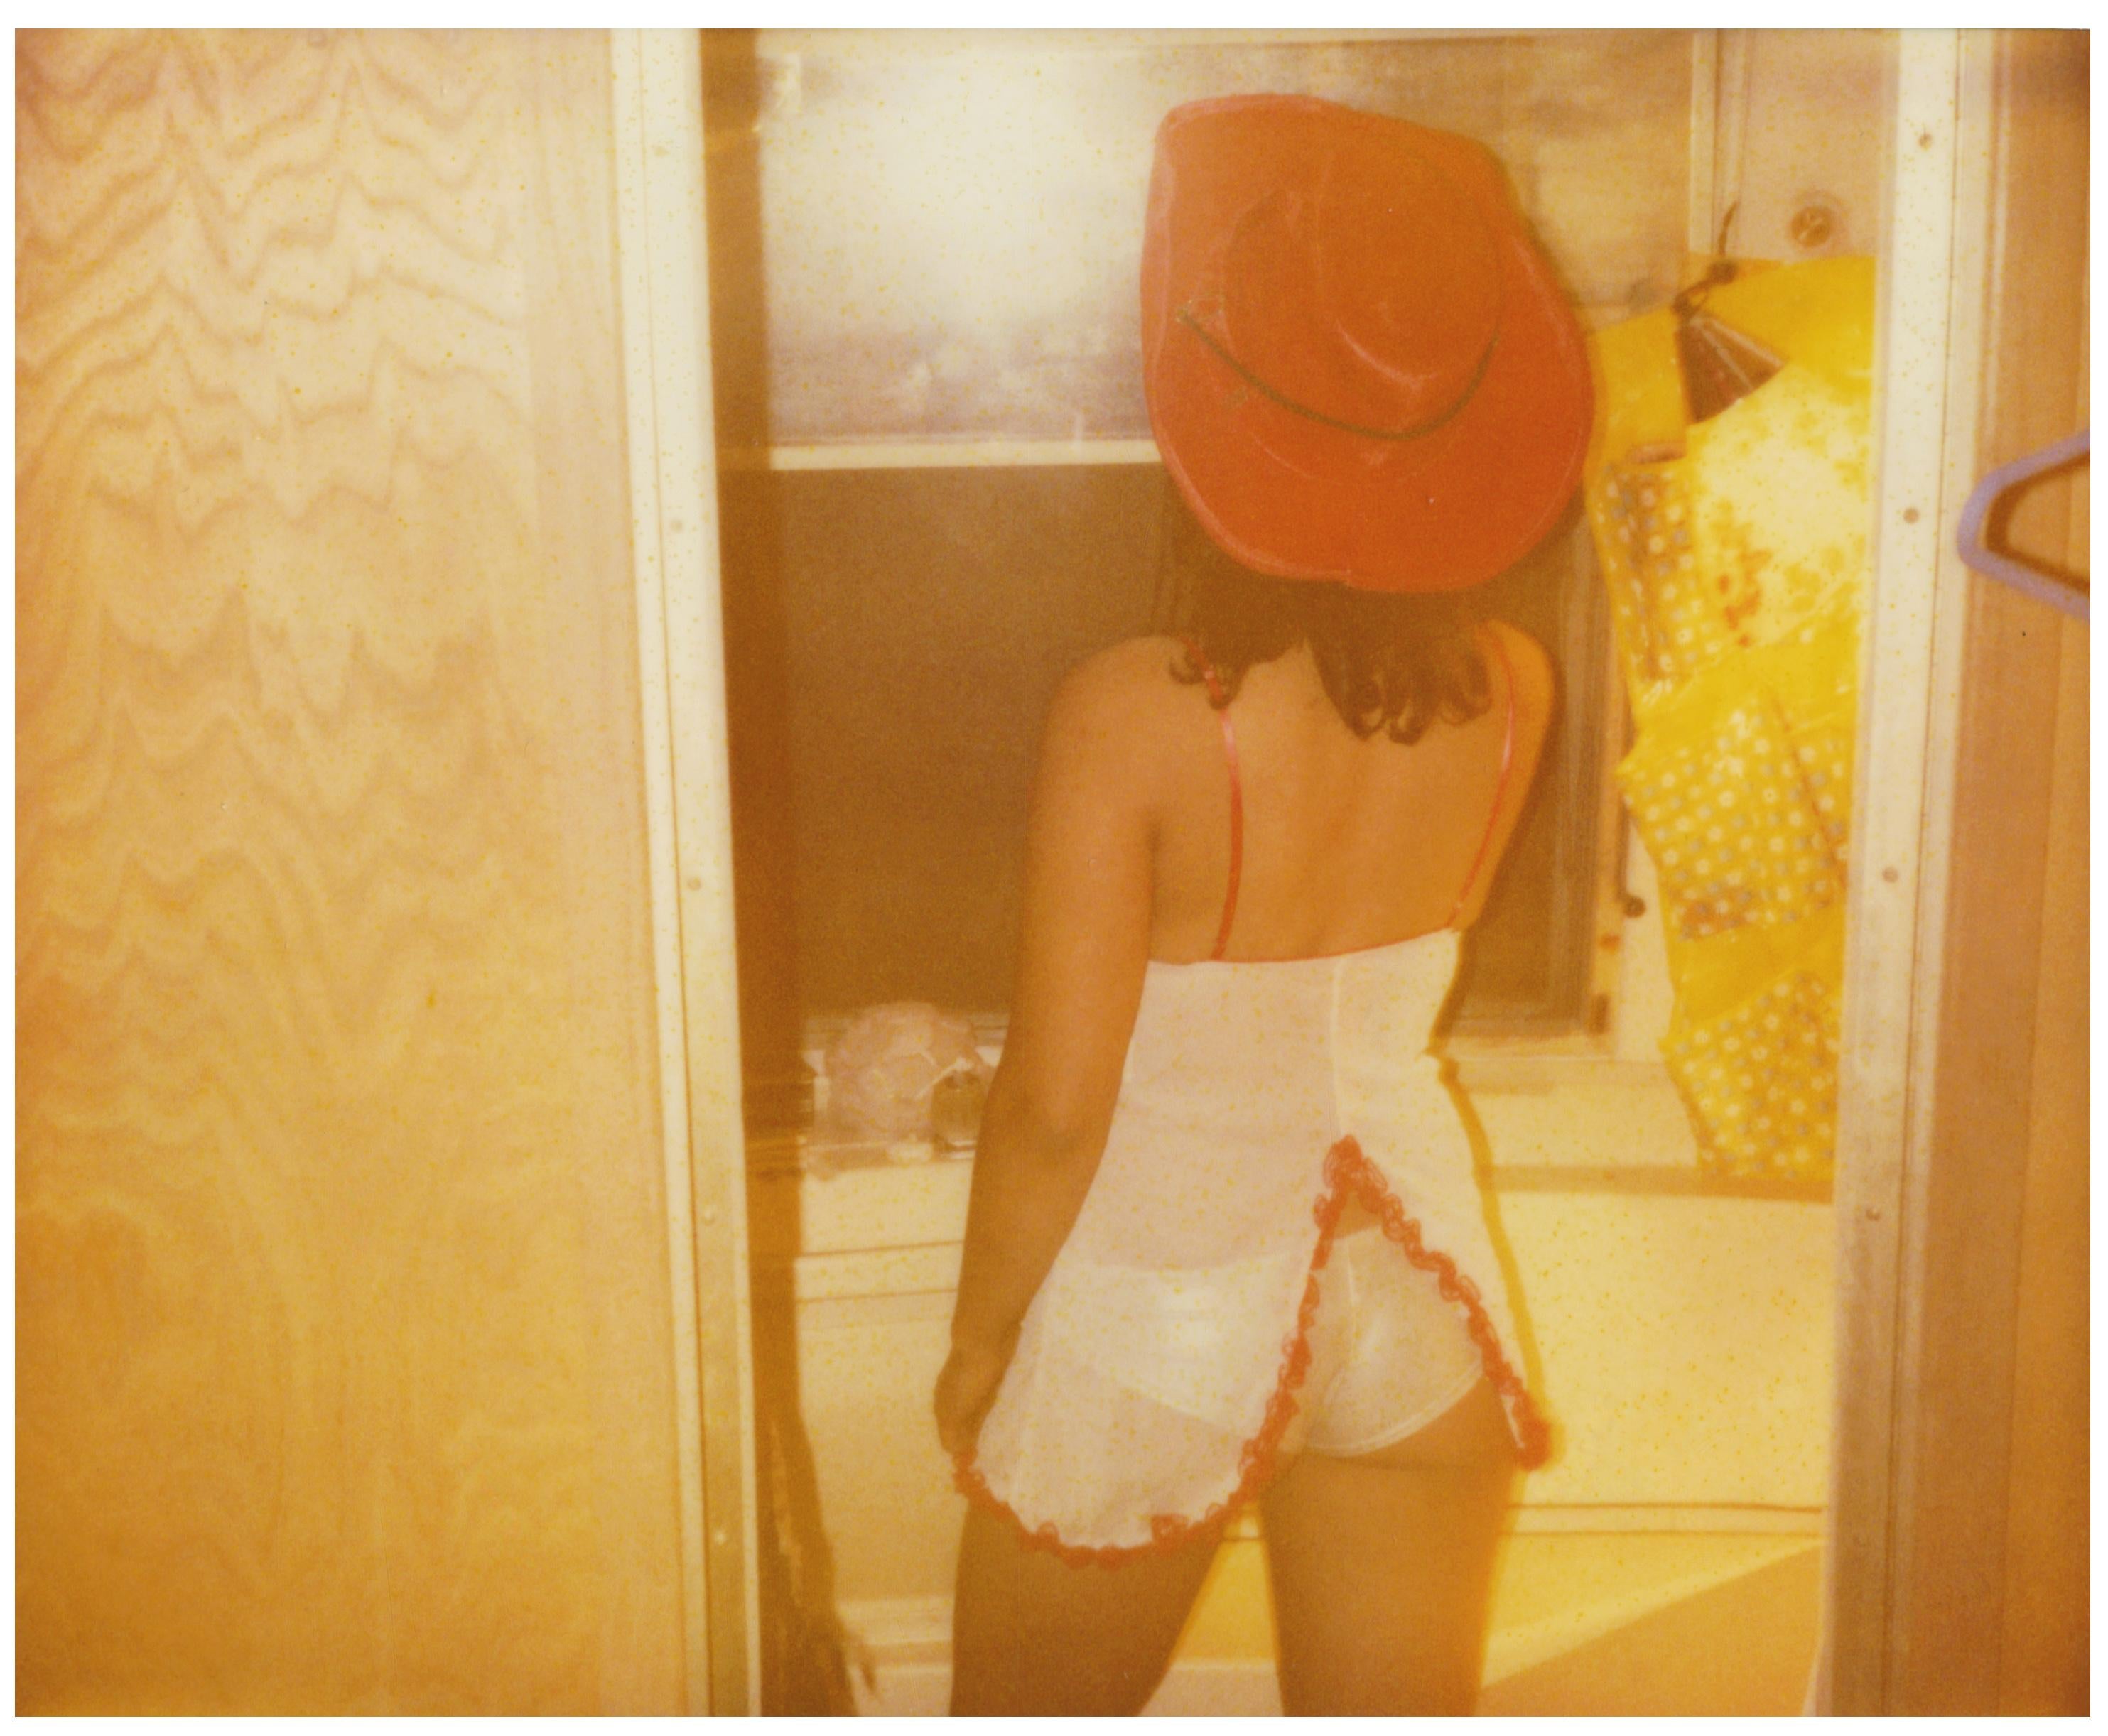 'Margarita smokes in Bathroom' (Till Death do us Part) - Polaroid, Contemporary